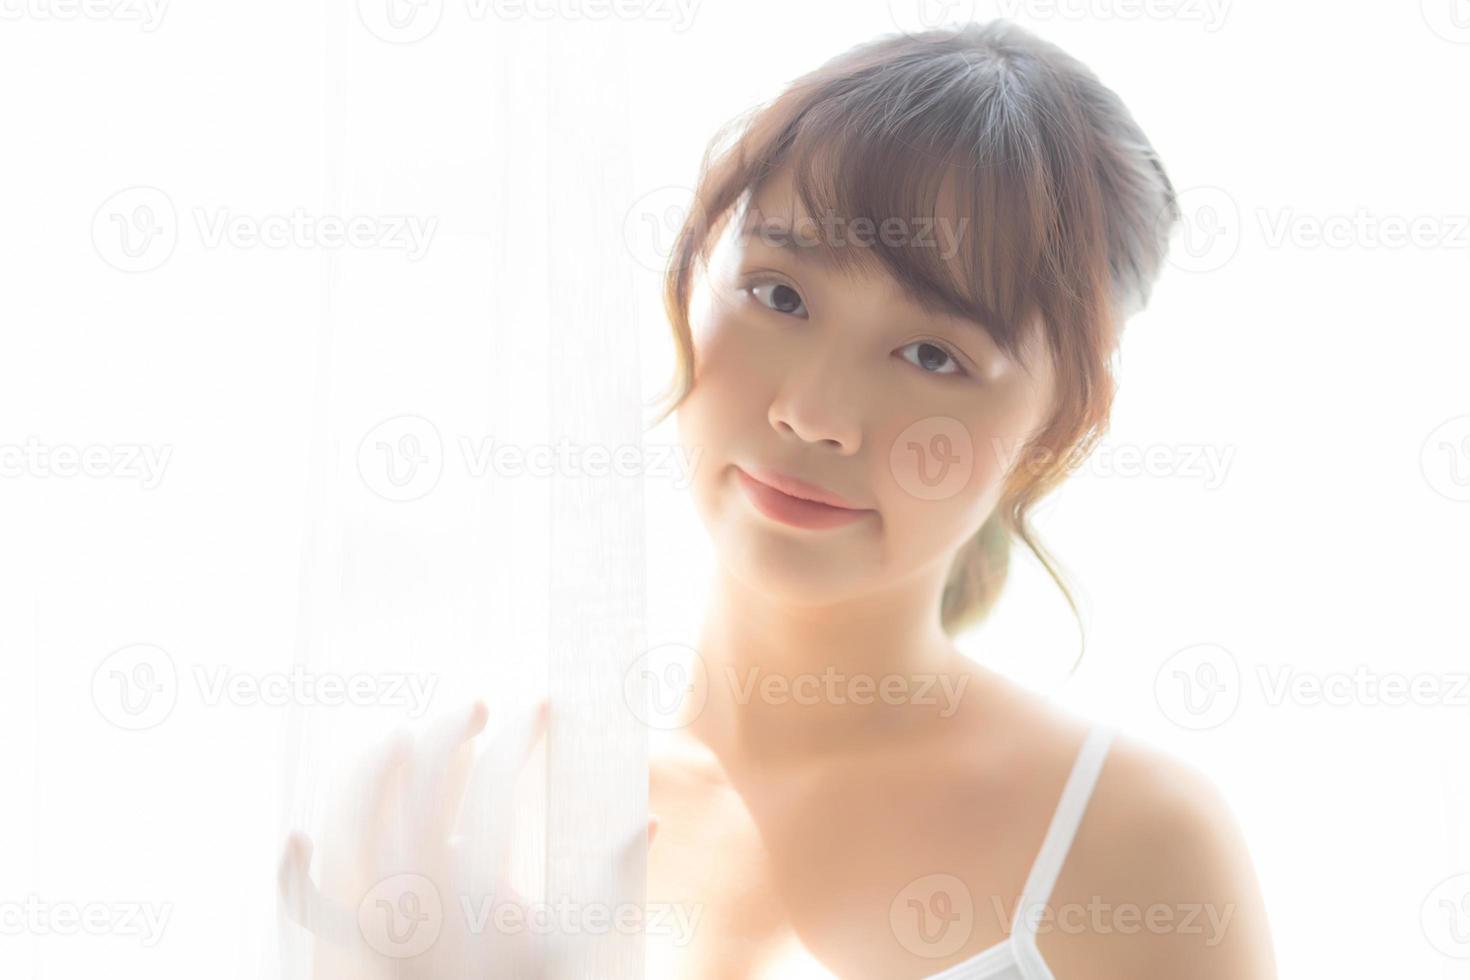 porträtt av vacker ung asiatisk kvinna som står i fönstret och ler medan hon vaknar med soluppgången på morgonen, flicka glad med friskhet och glad, livsstil och slappna av koncept. foto